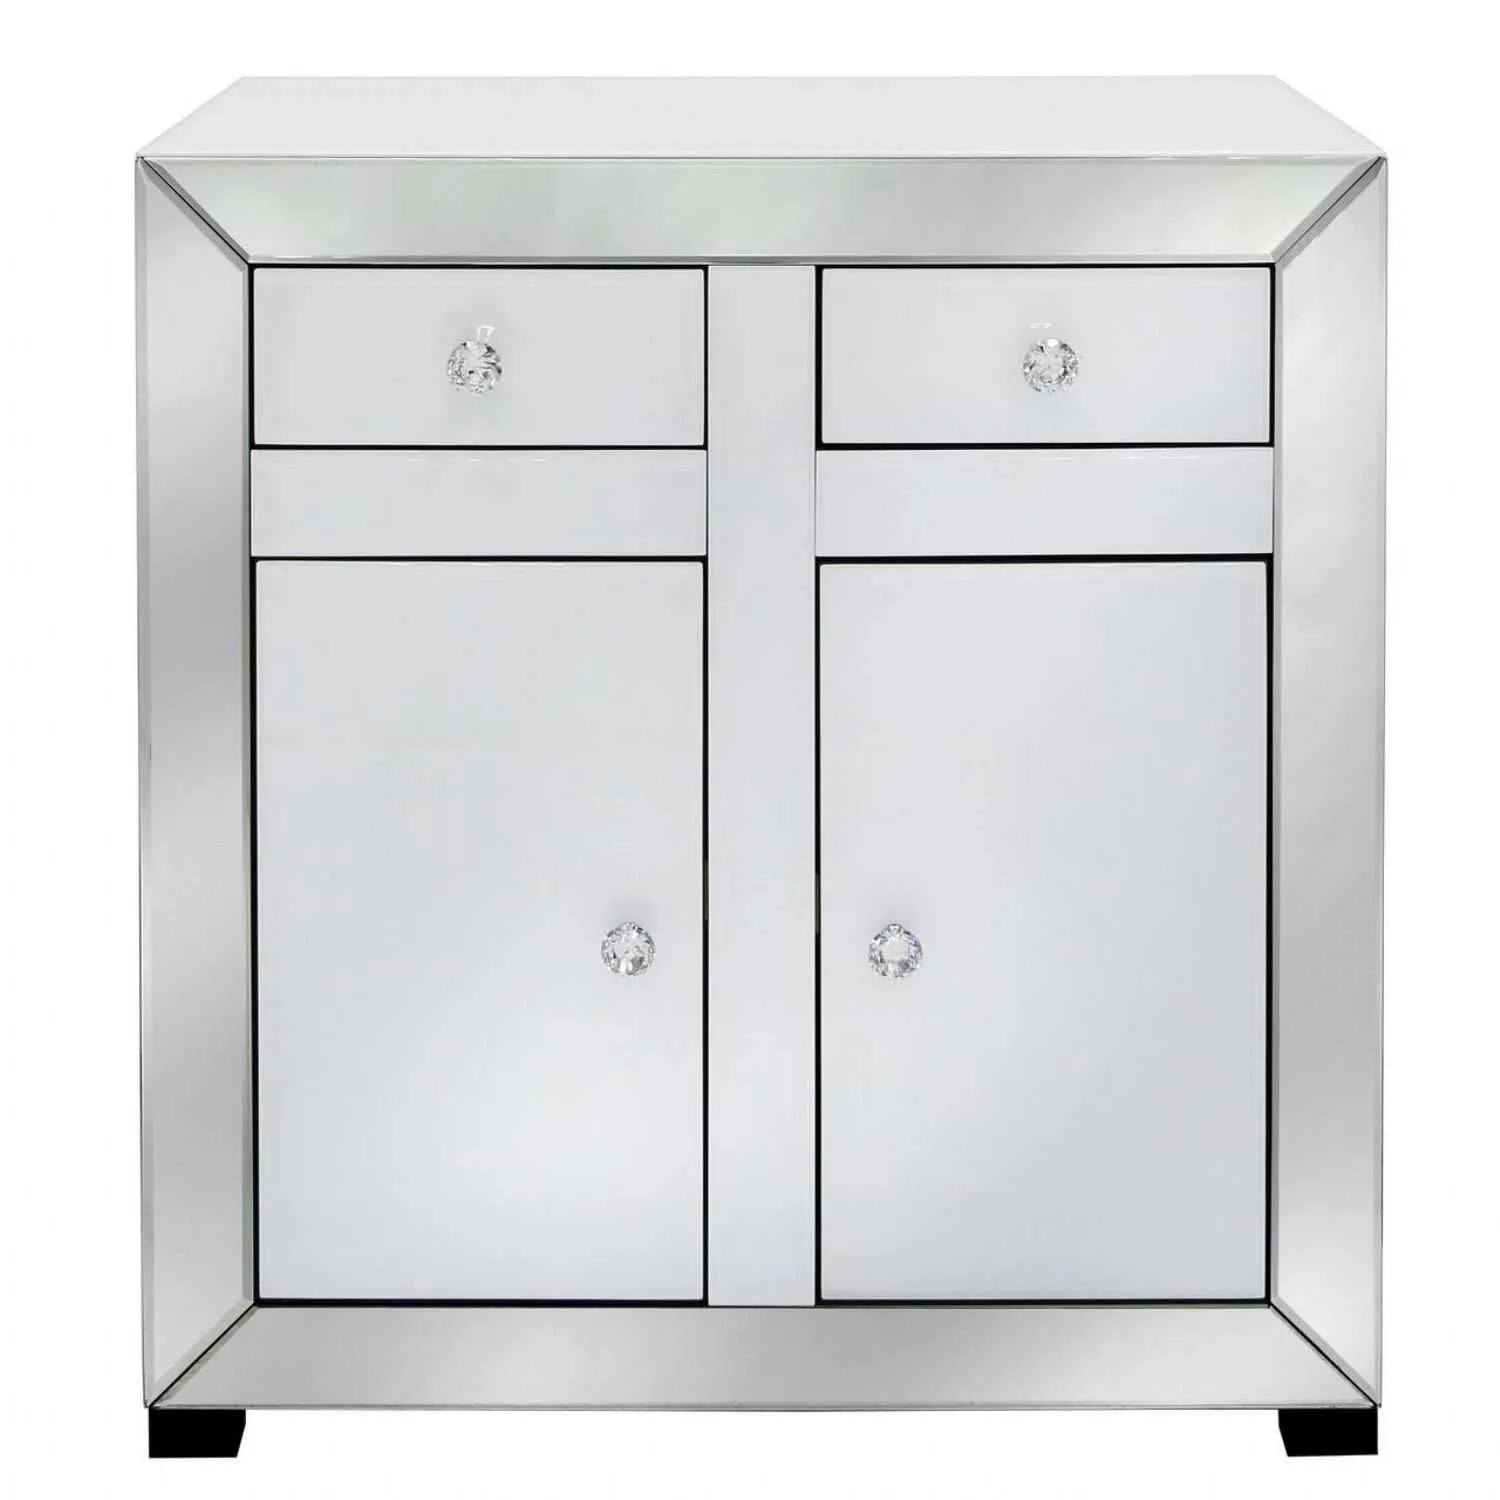 Opus Mirror White 2 Drawer 2 Door Cabinet